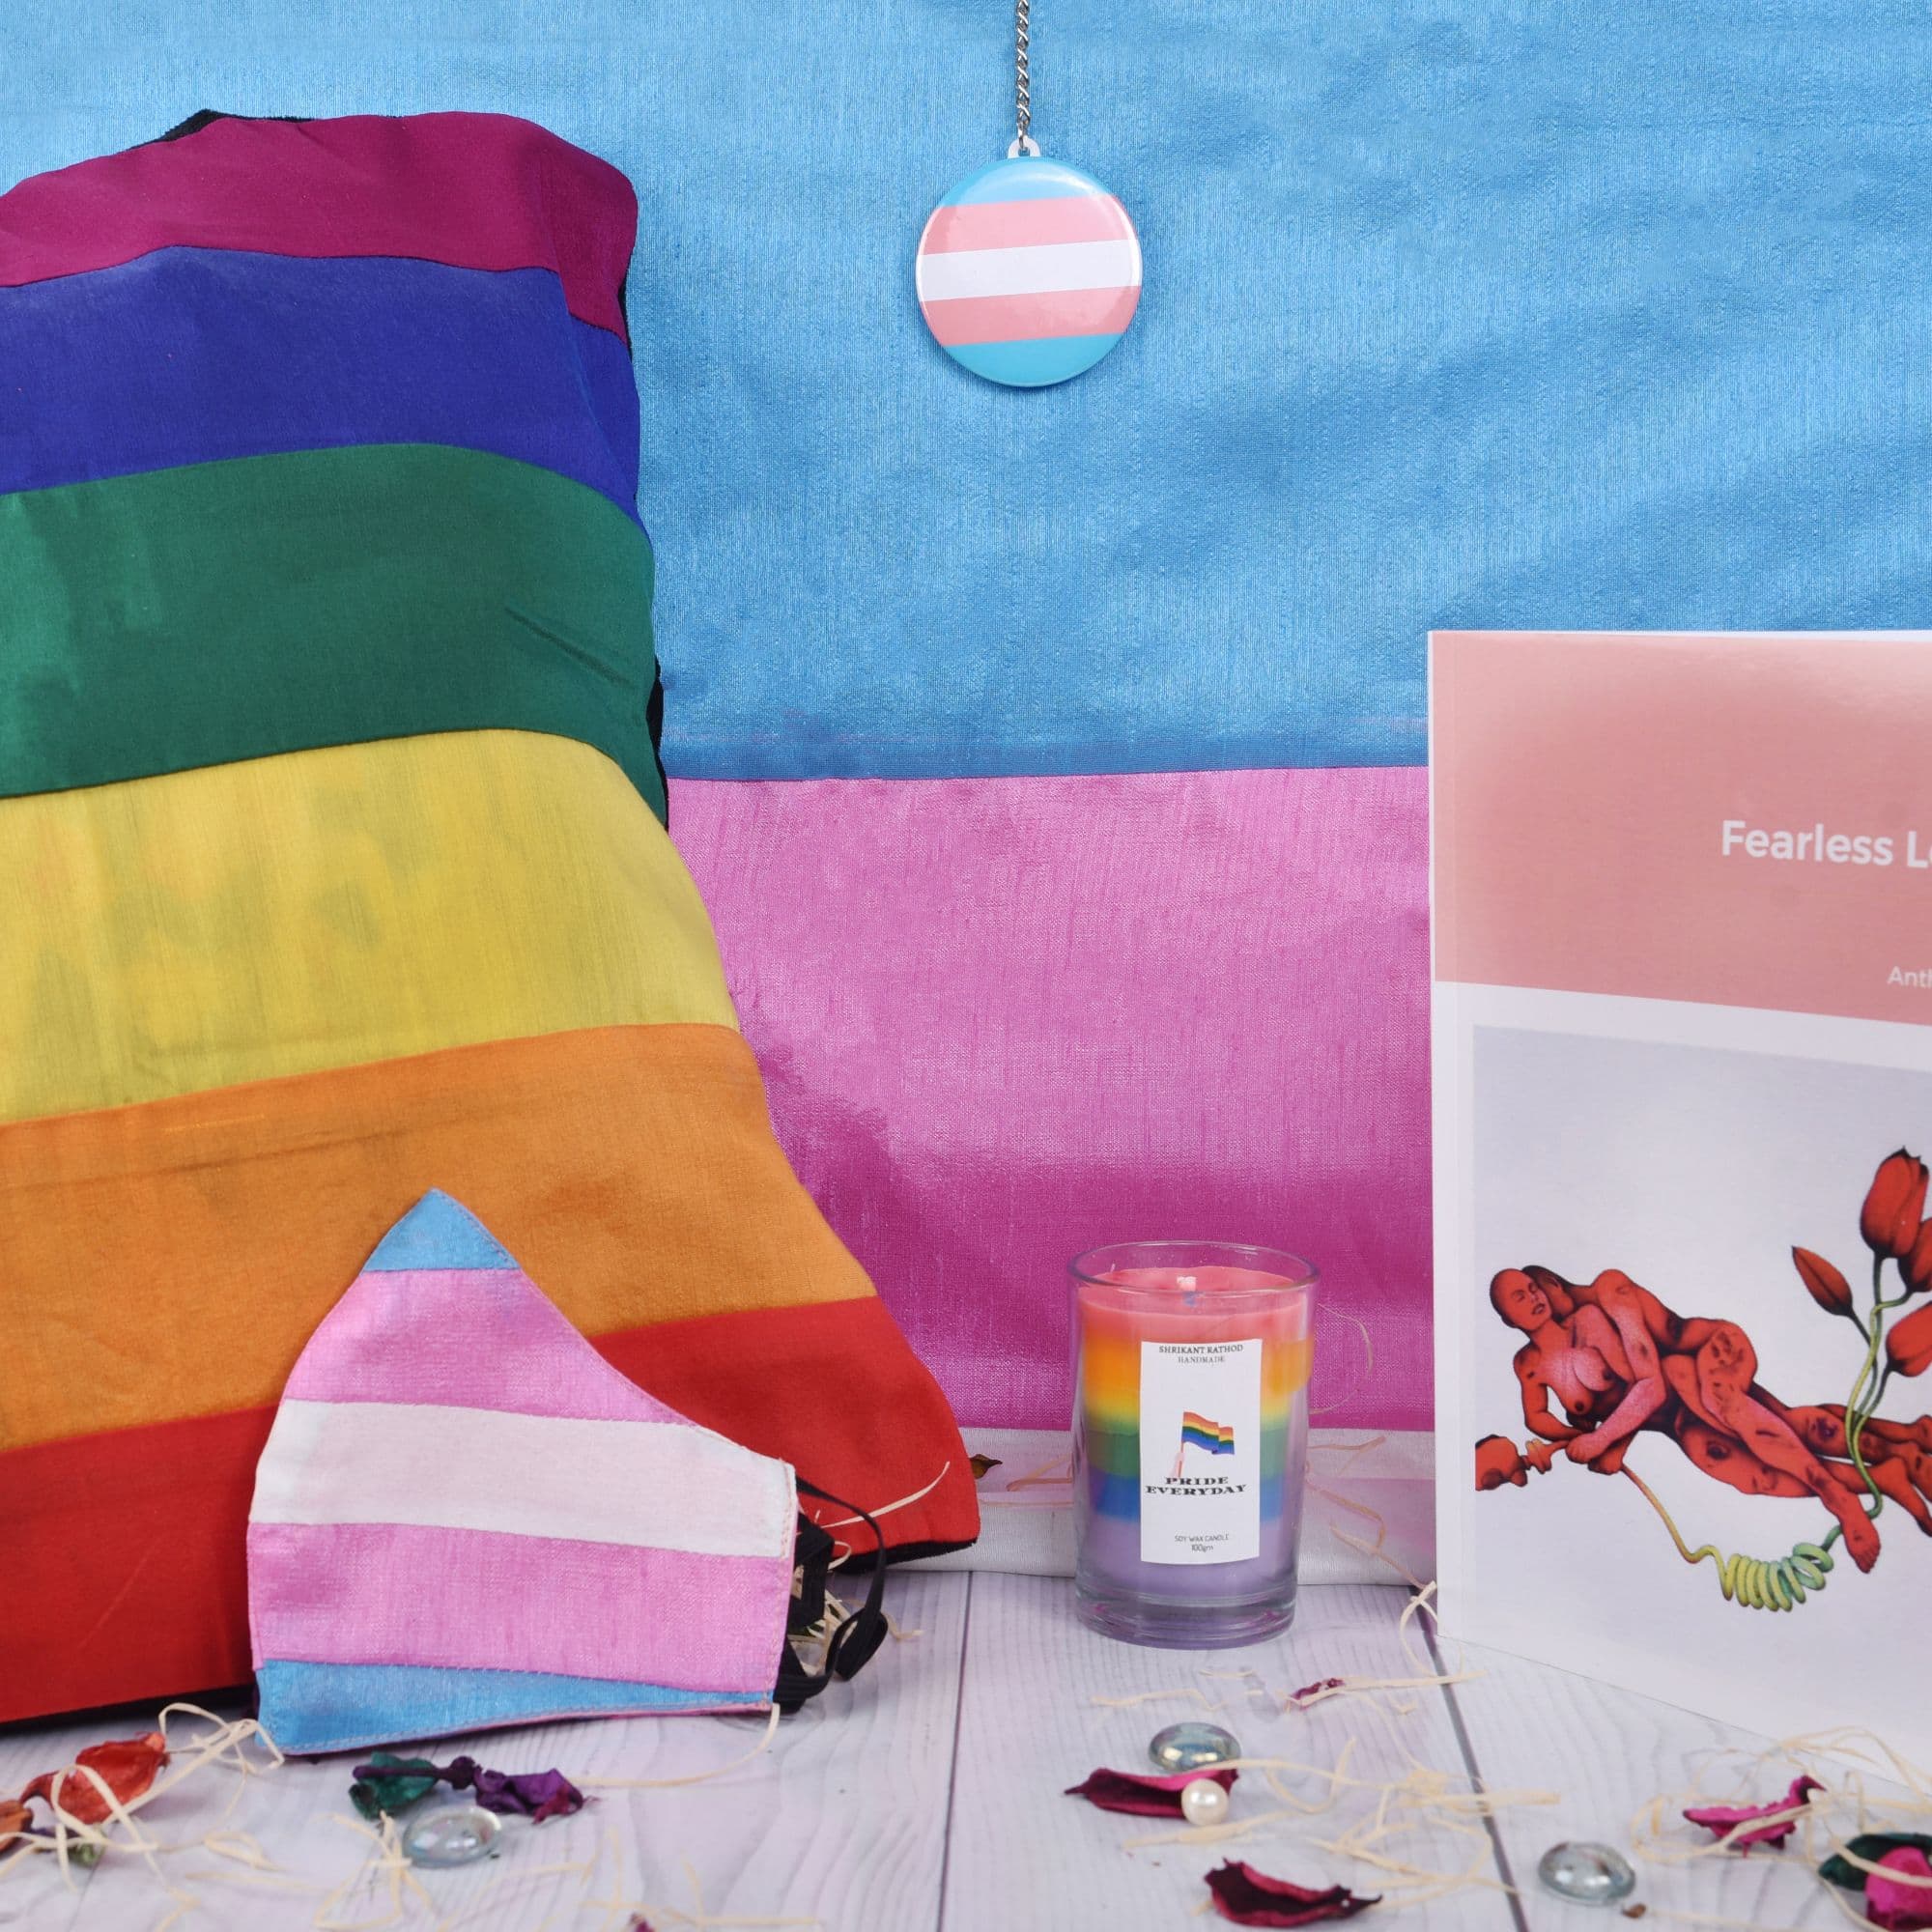 Pride Package 3 - Trans Pride